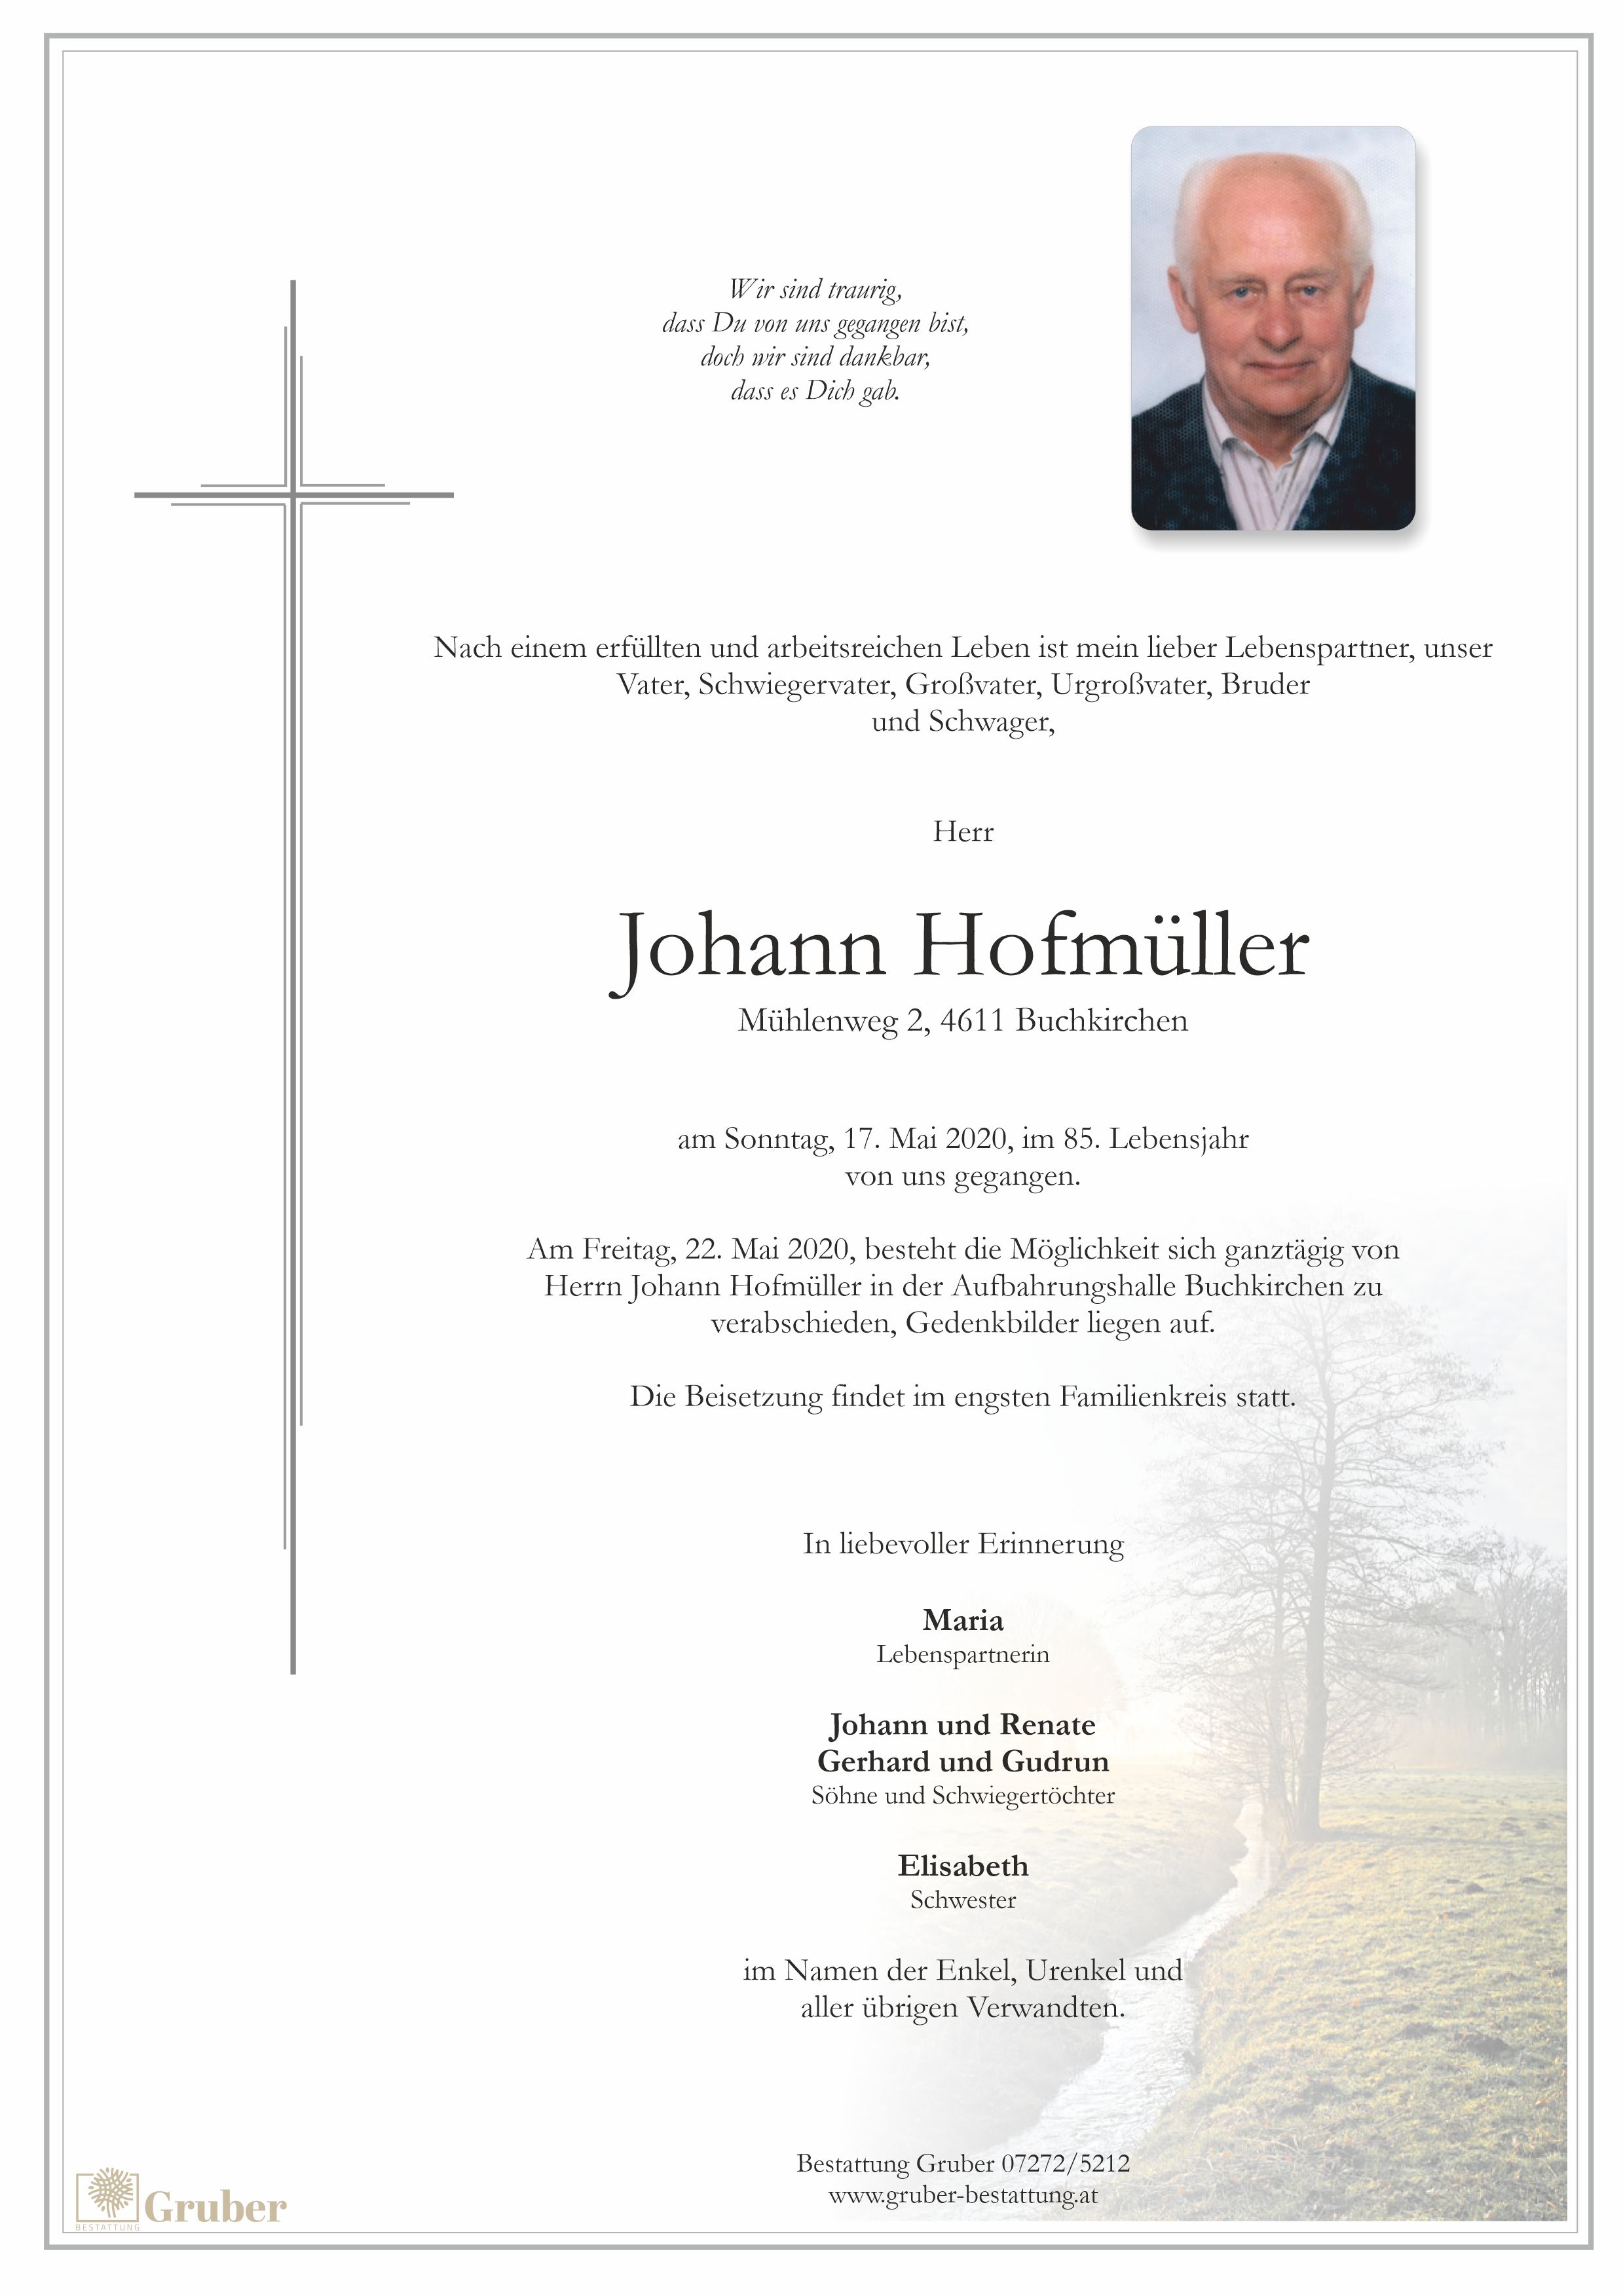 Johann Hofmüller (Buchkirchen)